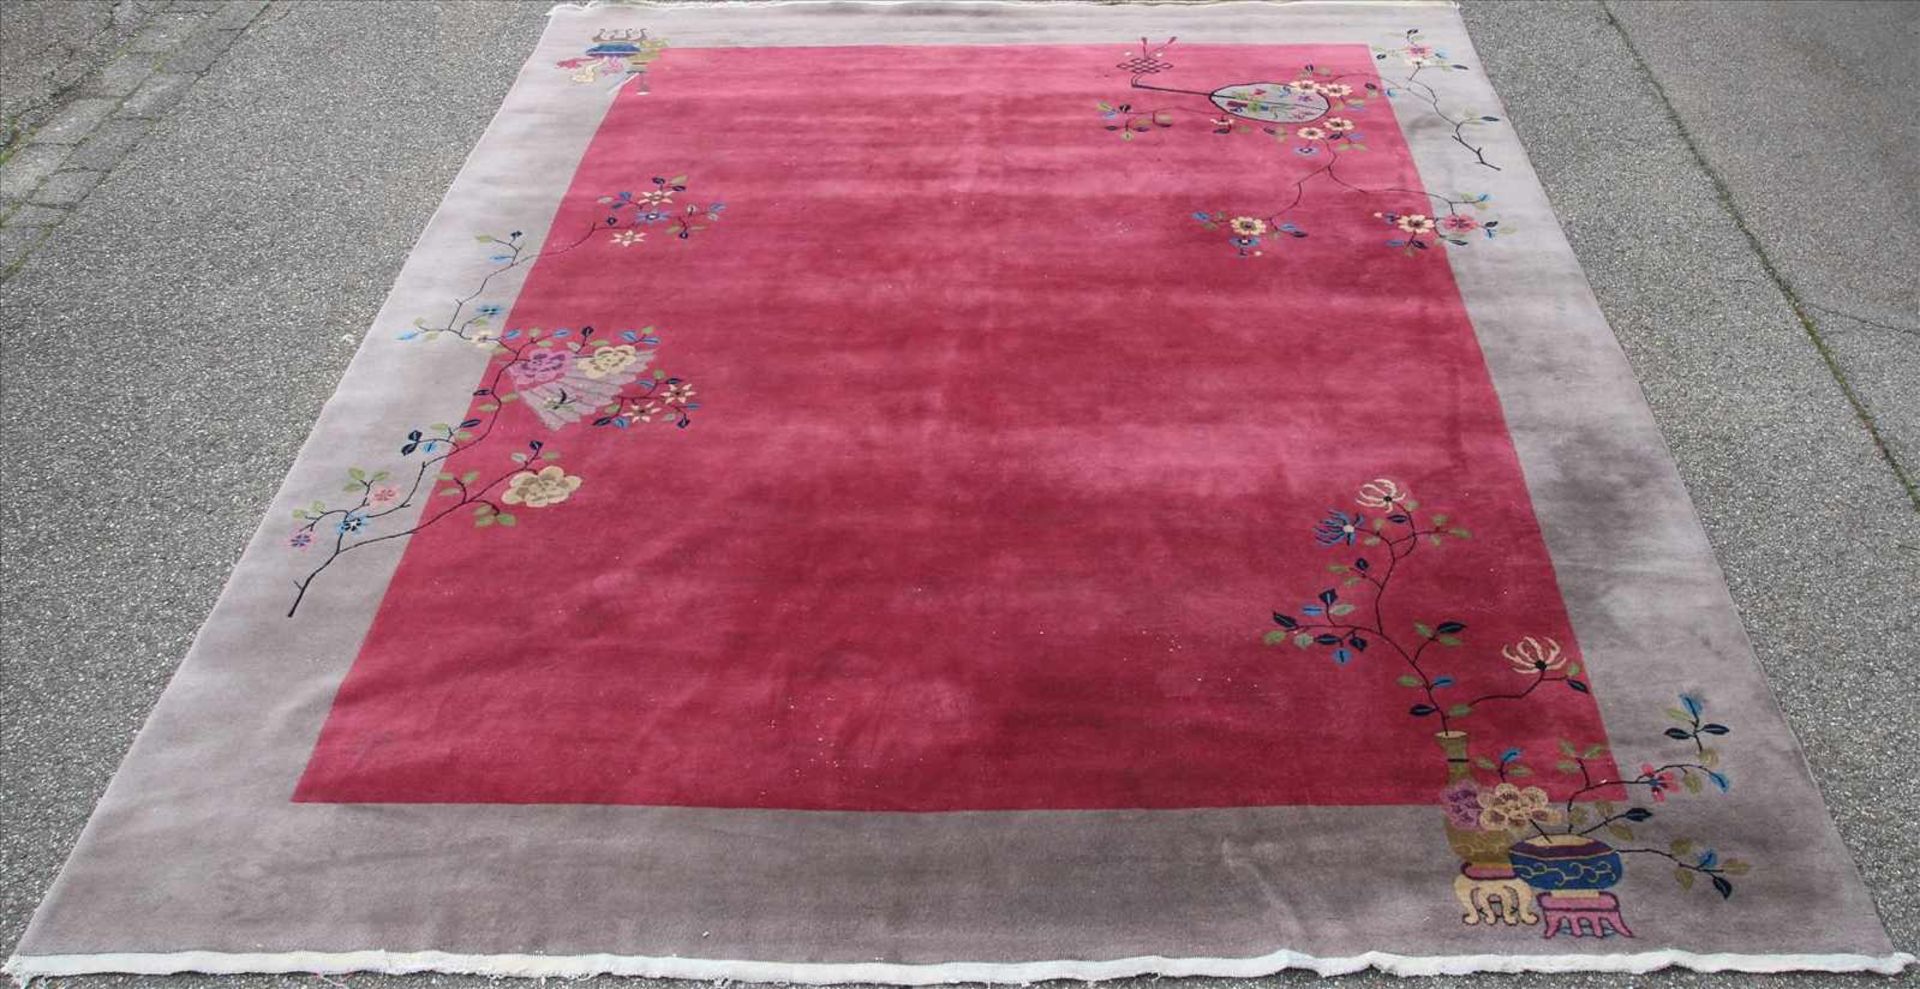 Chinesischer Teppich20. Jh. Graue Bordüre und rotes Innenfeld mit floralen Applikationen. Größe